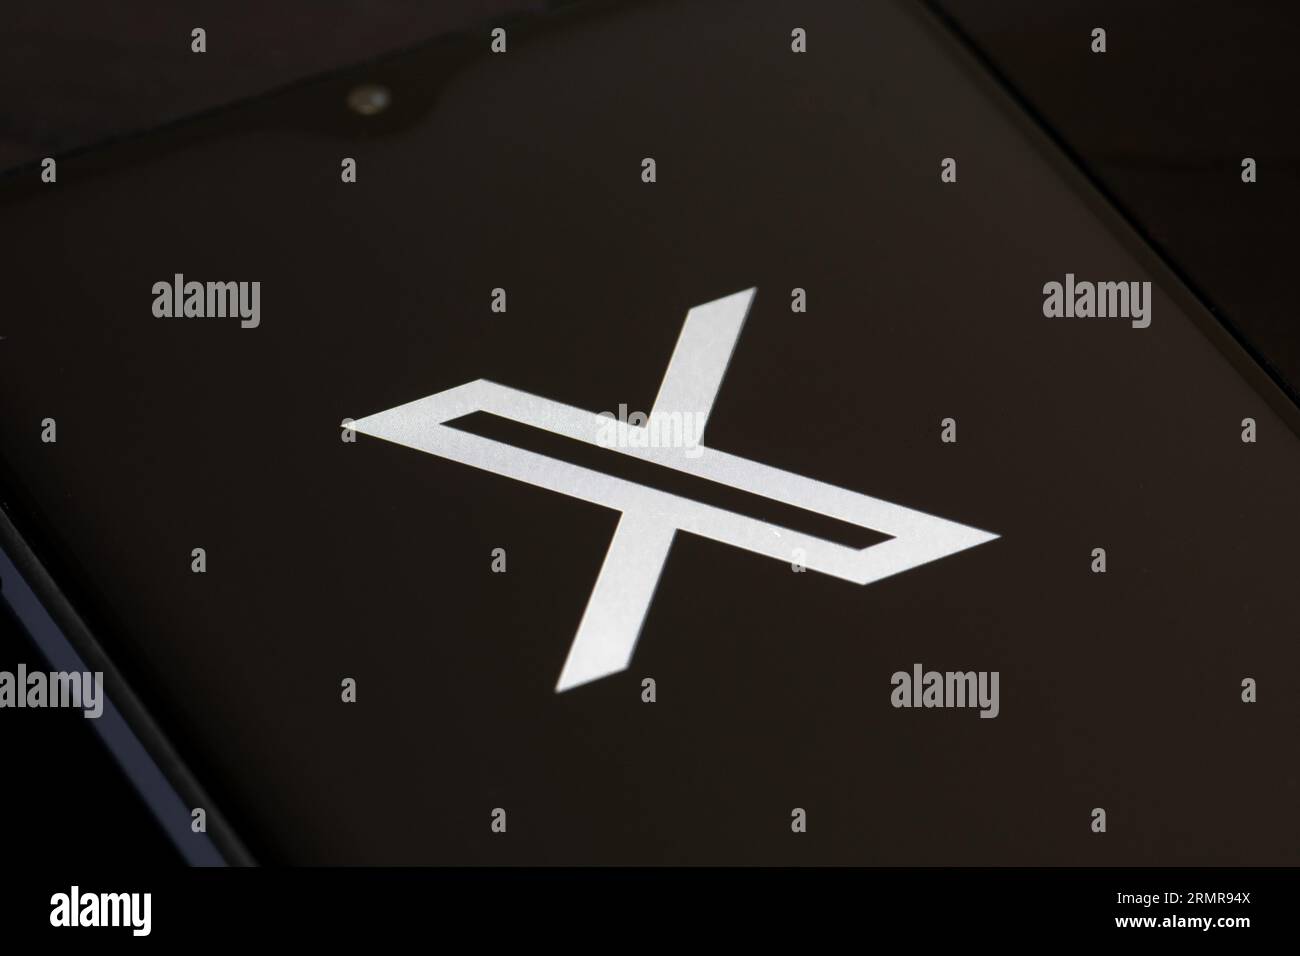 Logo iniziale di Twitter o X e app su uno smartphone su sfondo nero. Social media online e servizio di social network di proprietà di Elon Musk Foto Stock